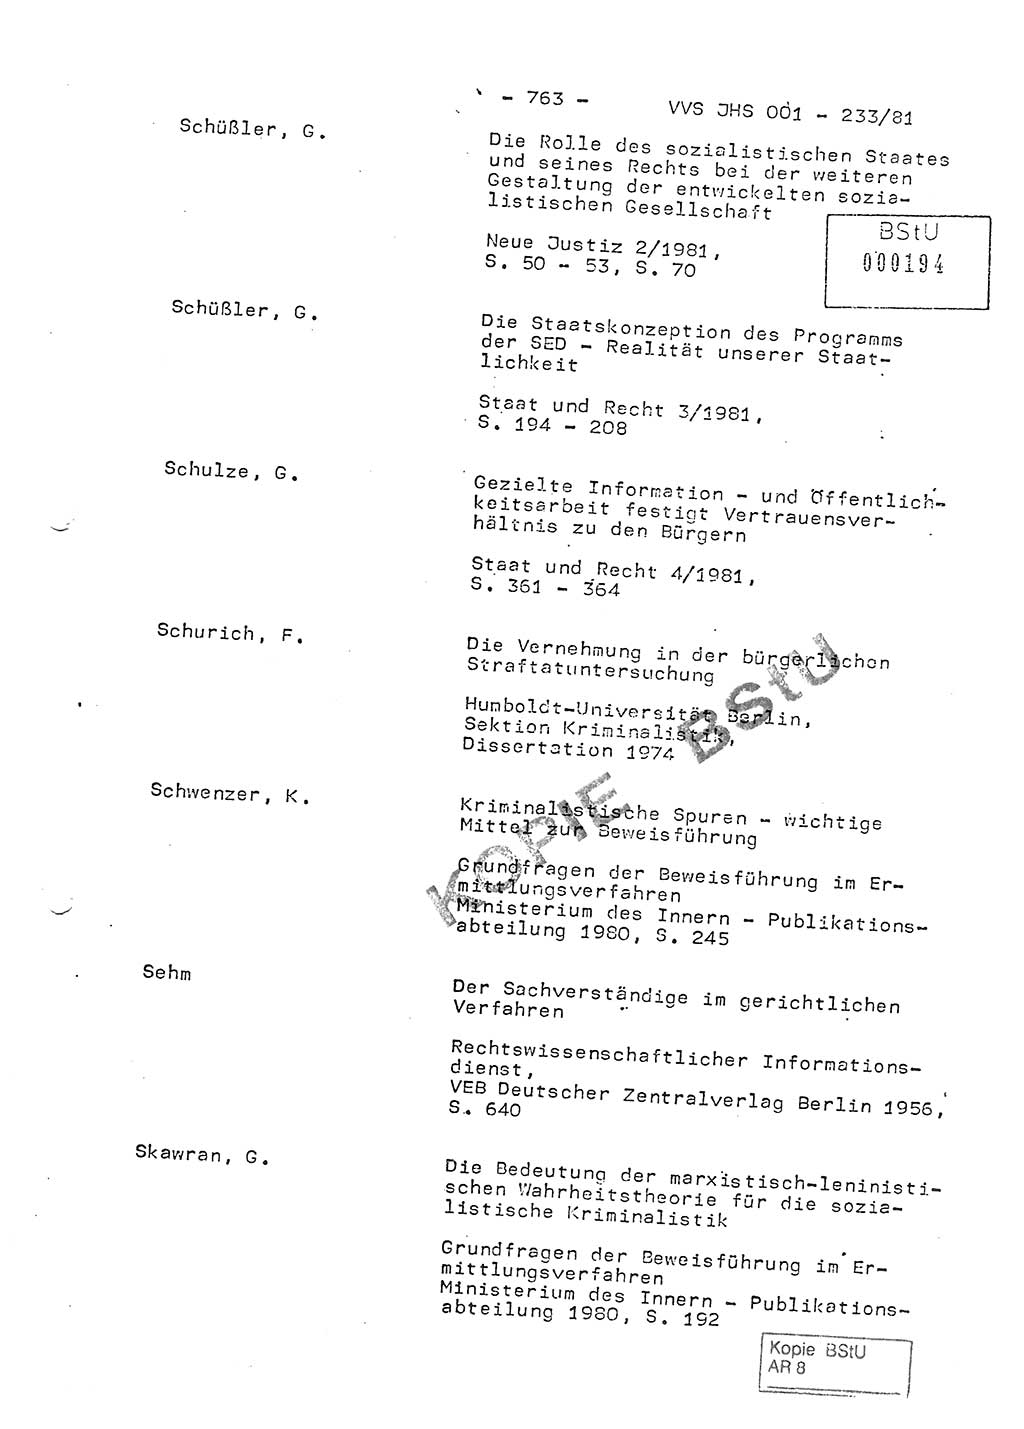 Dissertation Oberstleutnant Horst Zank (JHS), Oberstleutnant Dr. Karl-Heinz Knoblauch (JHS), Oberstleutnant Gustav-Adolf Kowalewski (HA Ⅸ), Oberstleutnant Wolfgang Plötner (HA Ⅸ), Ministerium für Staatssicherheit (MfS) [Deutsche Demokratische Republik (DDR)], Juristische Hochschule (JHS), Vertrauliche Verschlußsache (VVS) o001-233/81, Potsdam 1981, Blatt 763 (Diss. MfS DDR JHS VVS o001-233/81 1981, Bl. 763)